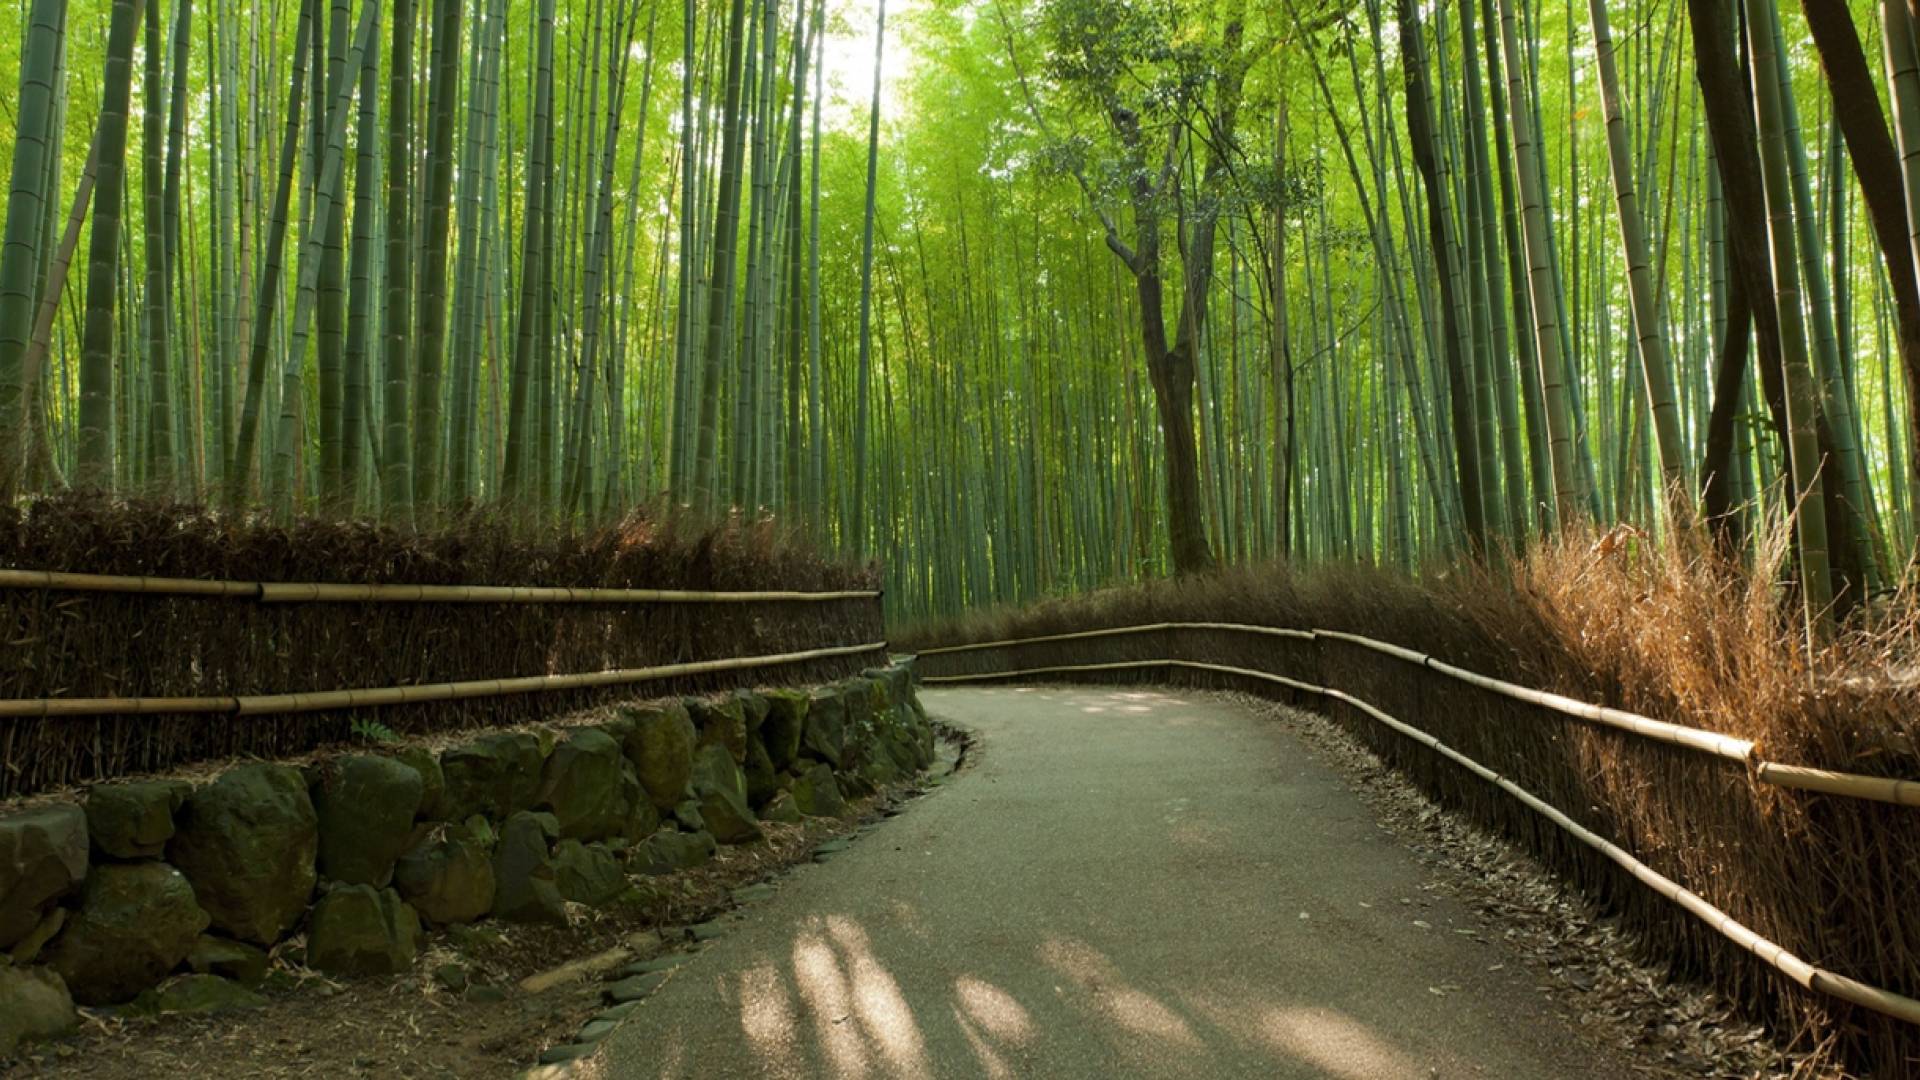 Path through bamboo in Kyoto's Arashiyama forest.